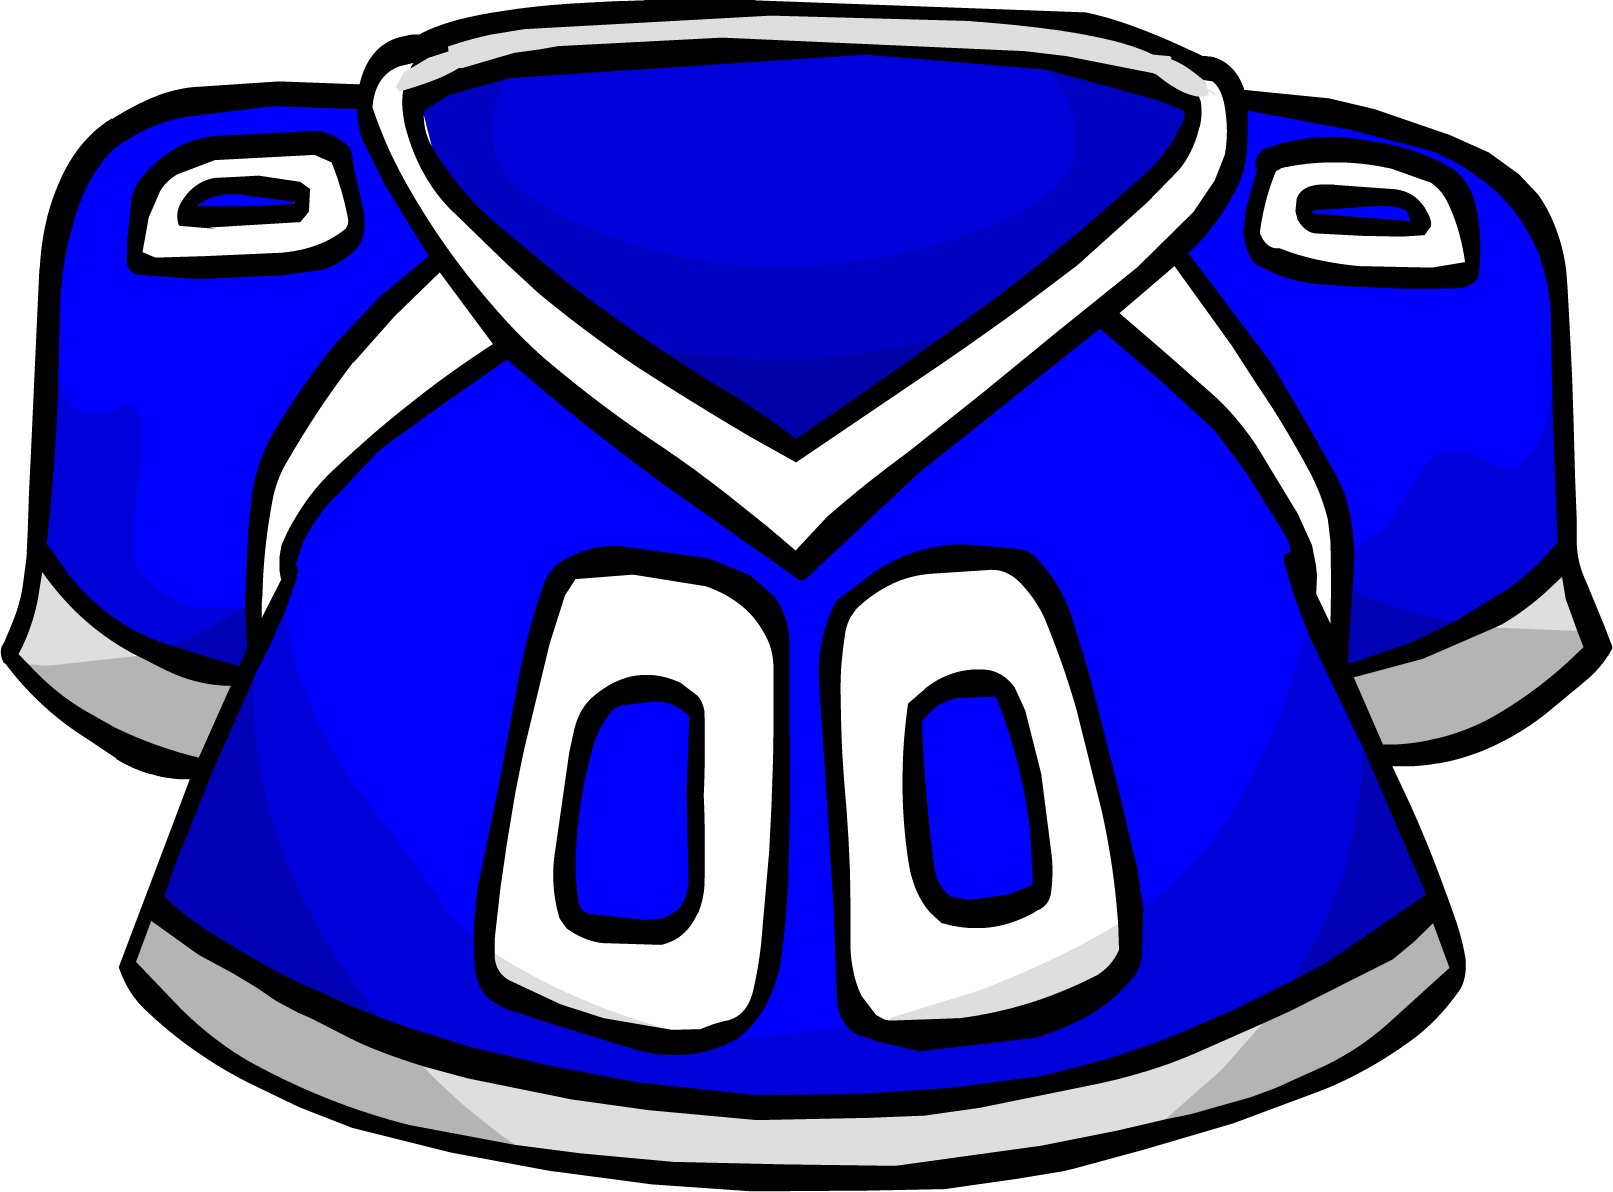 Blue Football Jersey Clipart